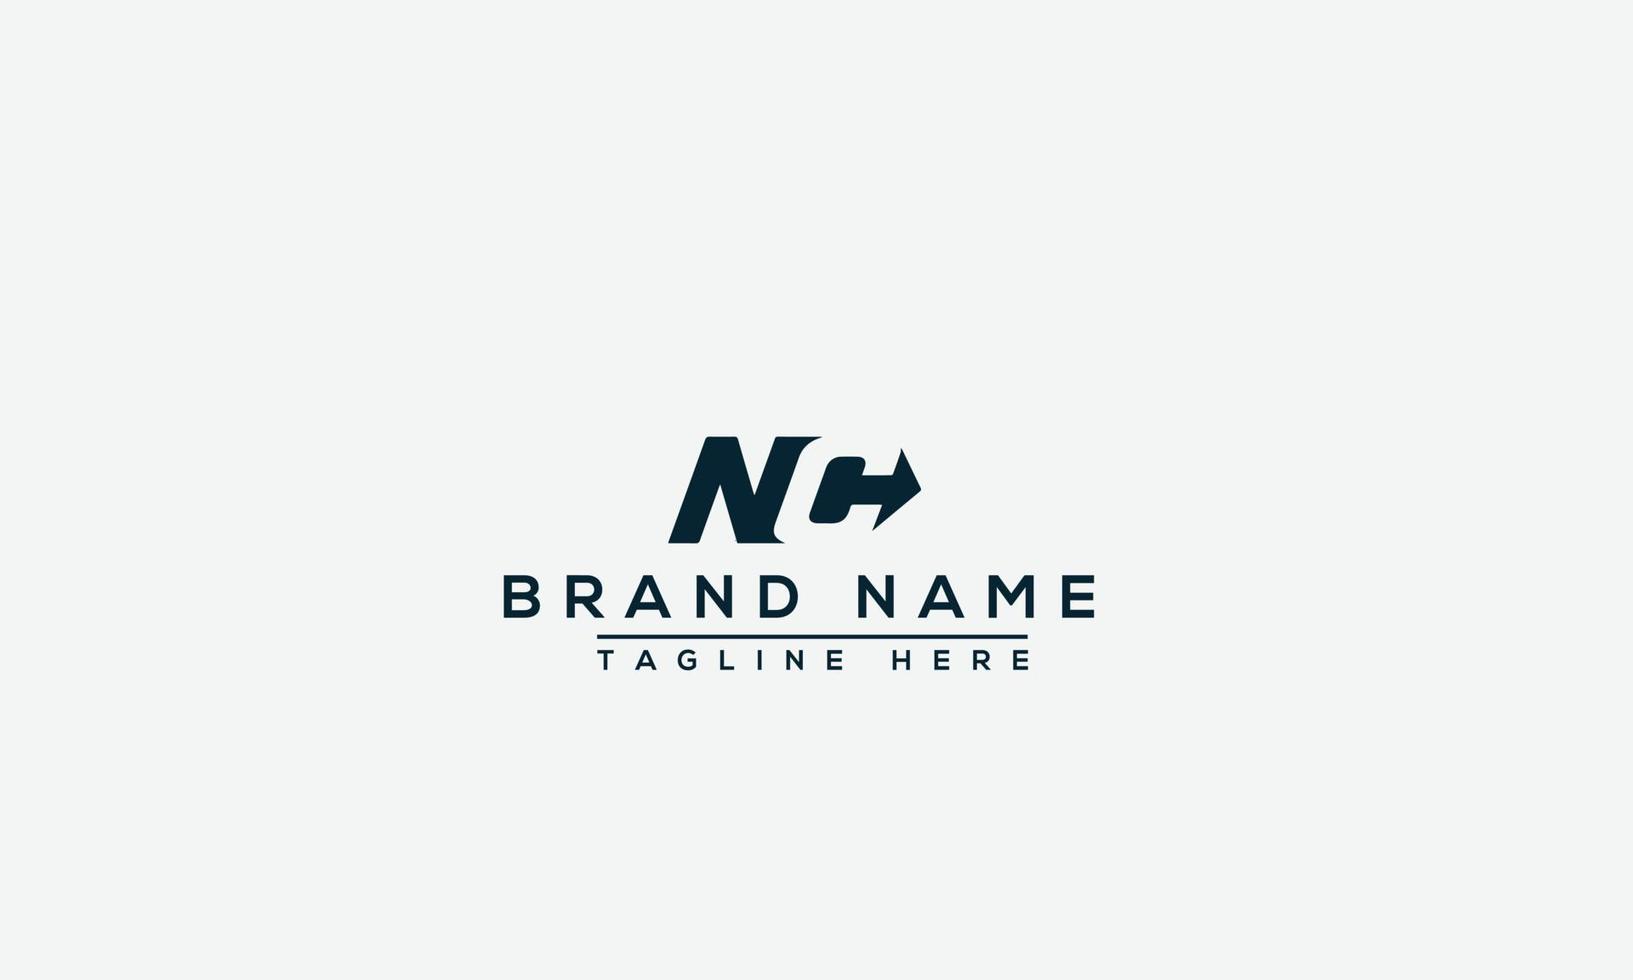 elemento di branding grafico vettoriale del modello di progettazione del logo nc.